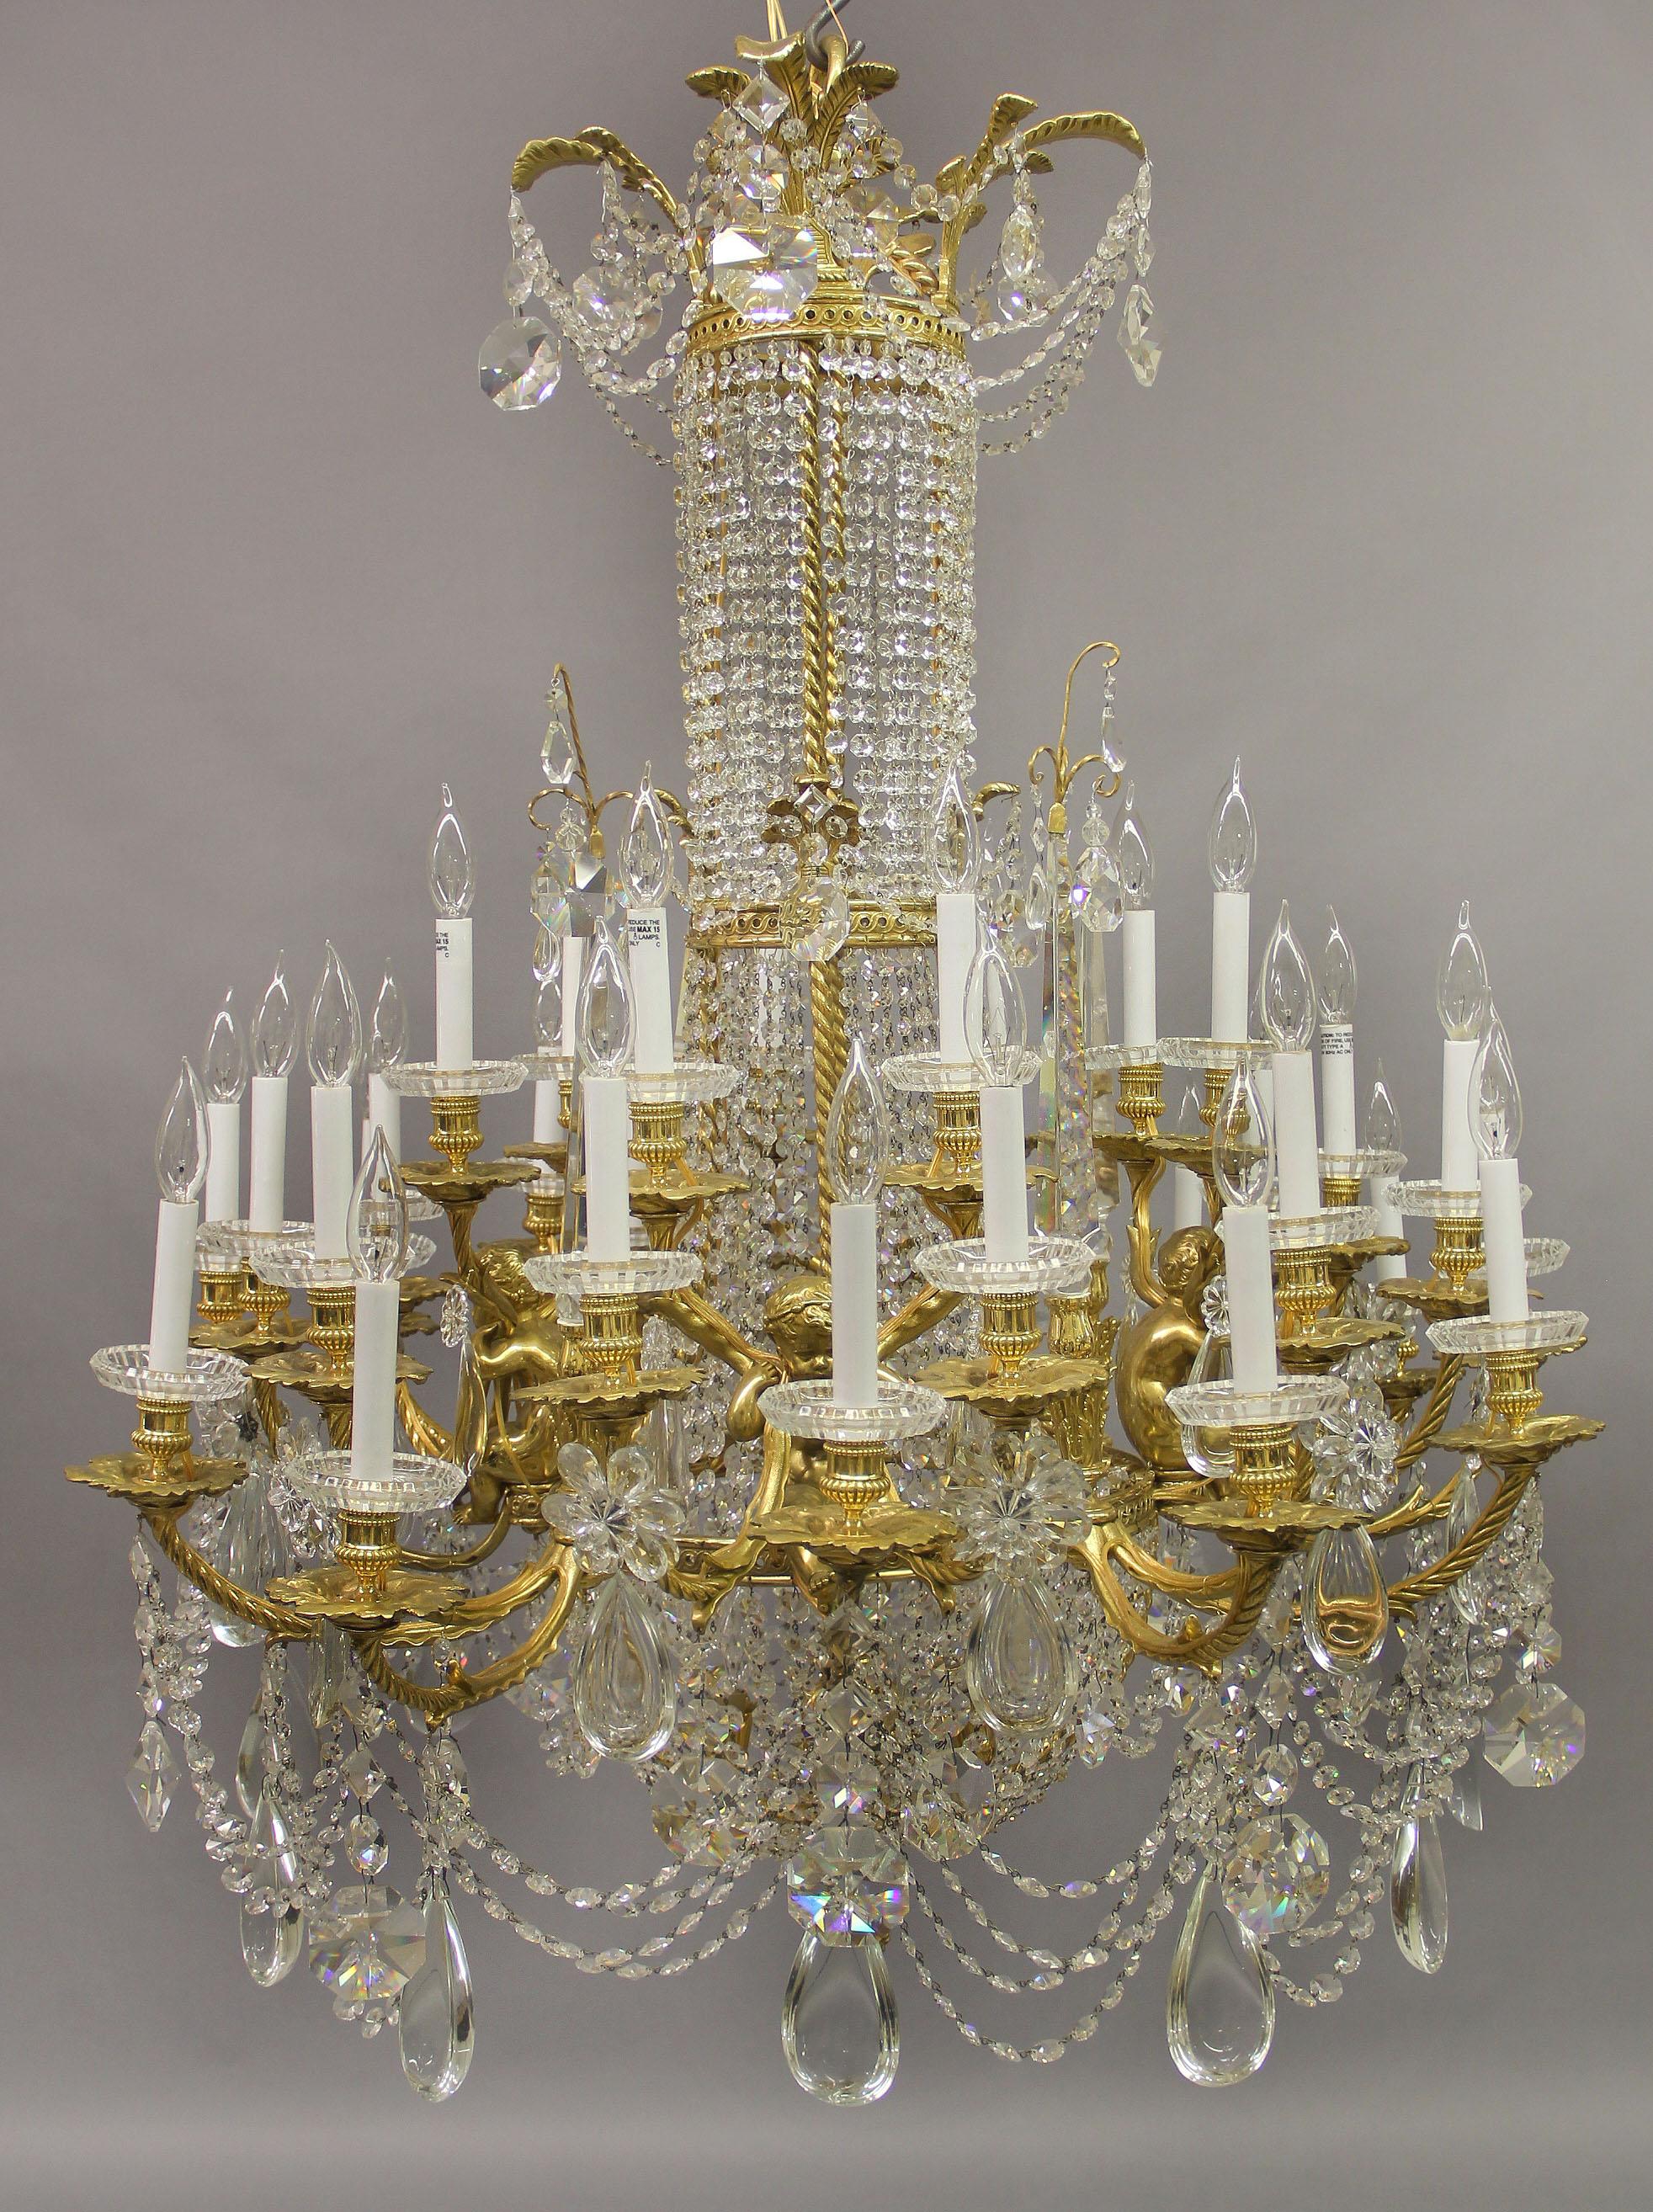 Un exquis lustre à trente-six lumières en bronze doré et cristal de Baccarat, datant de la fin du 19e siècle

Compagnie des Cristalleries de Baccarat

La couronne circulaire en forme de palme et guillochée est suspendue à des chaînes et à des